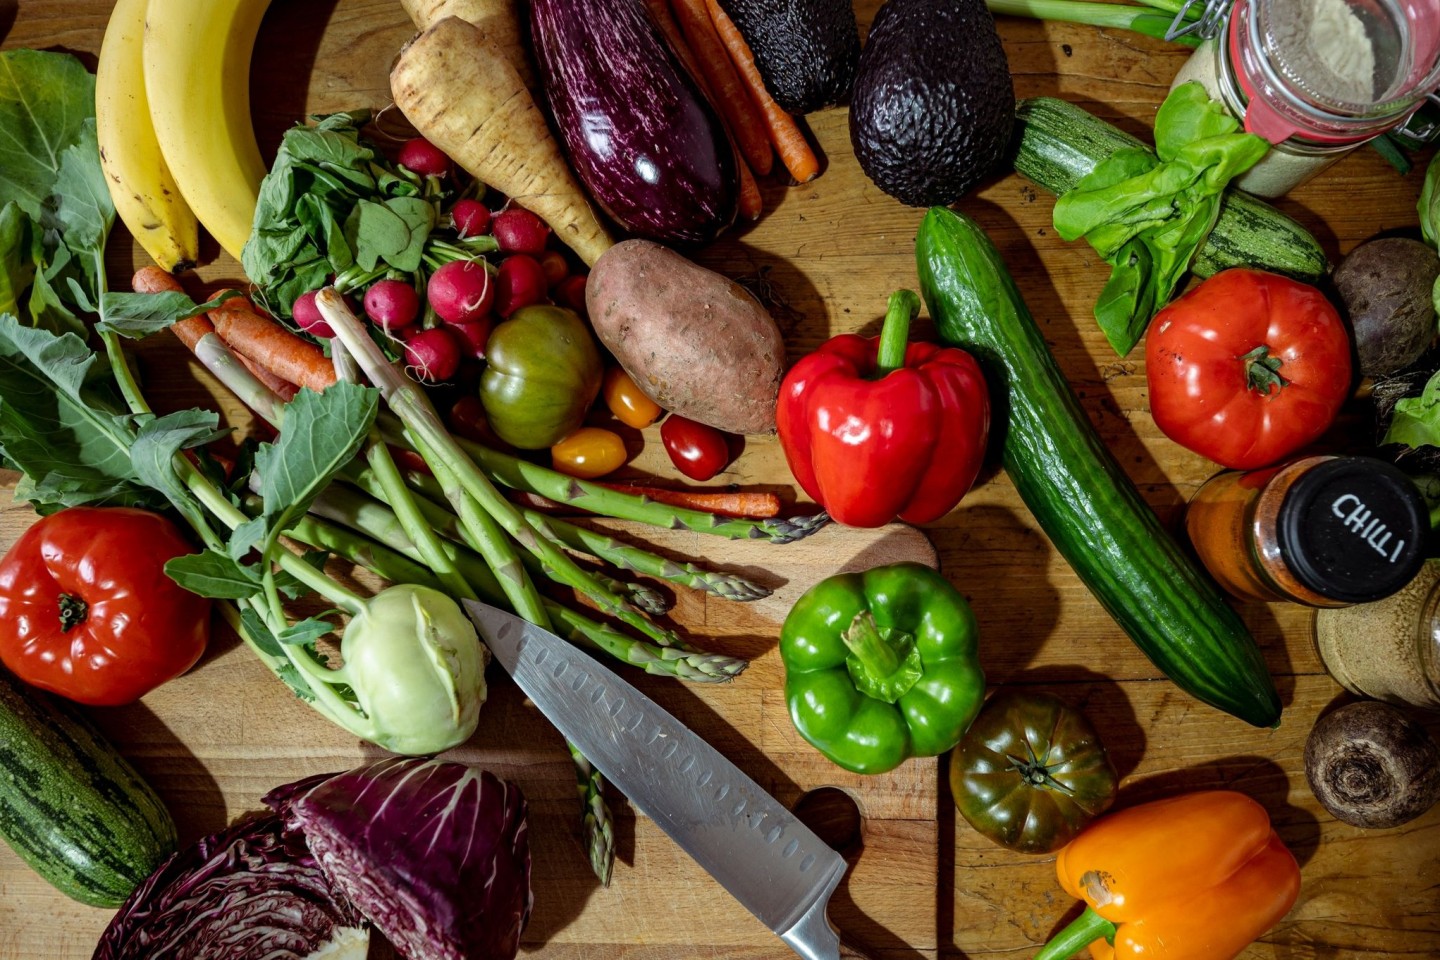 Die Studienteilnehmer ernähren sich entweder vegan, vegetarisch, pescetarisch oder essen sowohl pflanzliche als auch tierische Produkte.